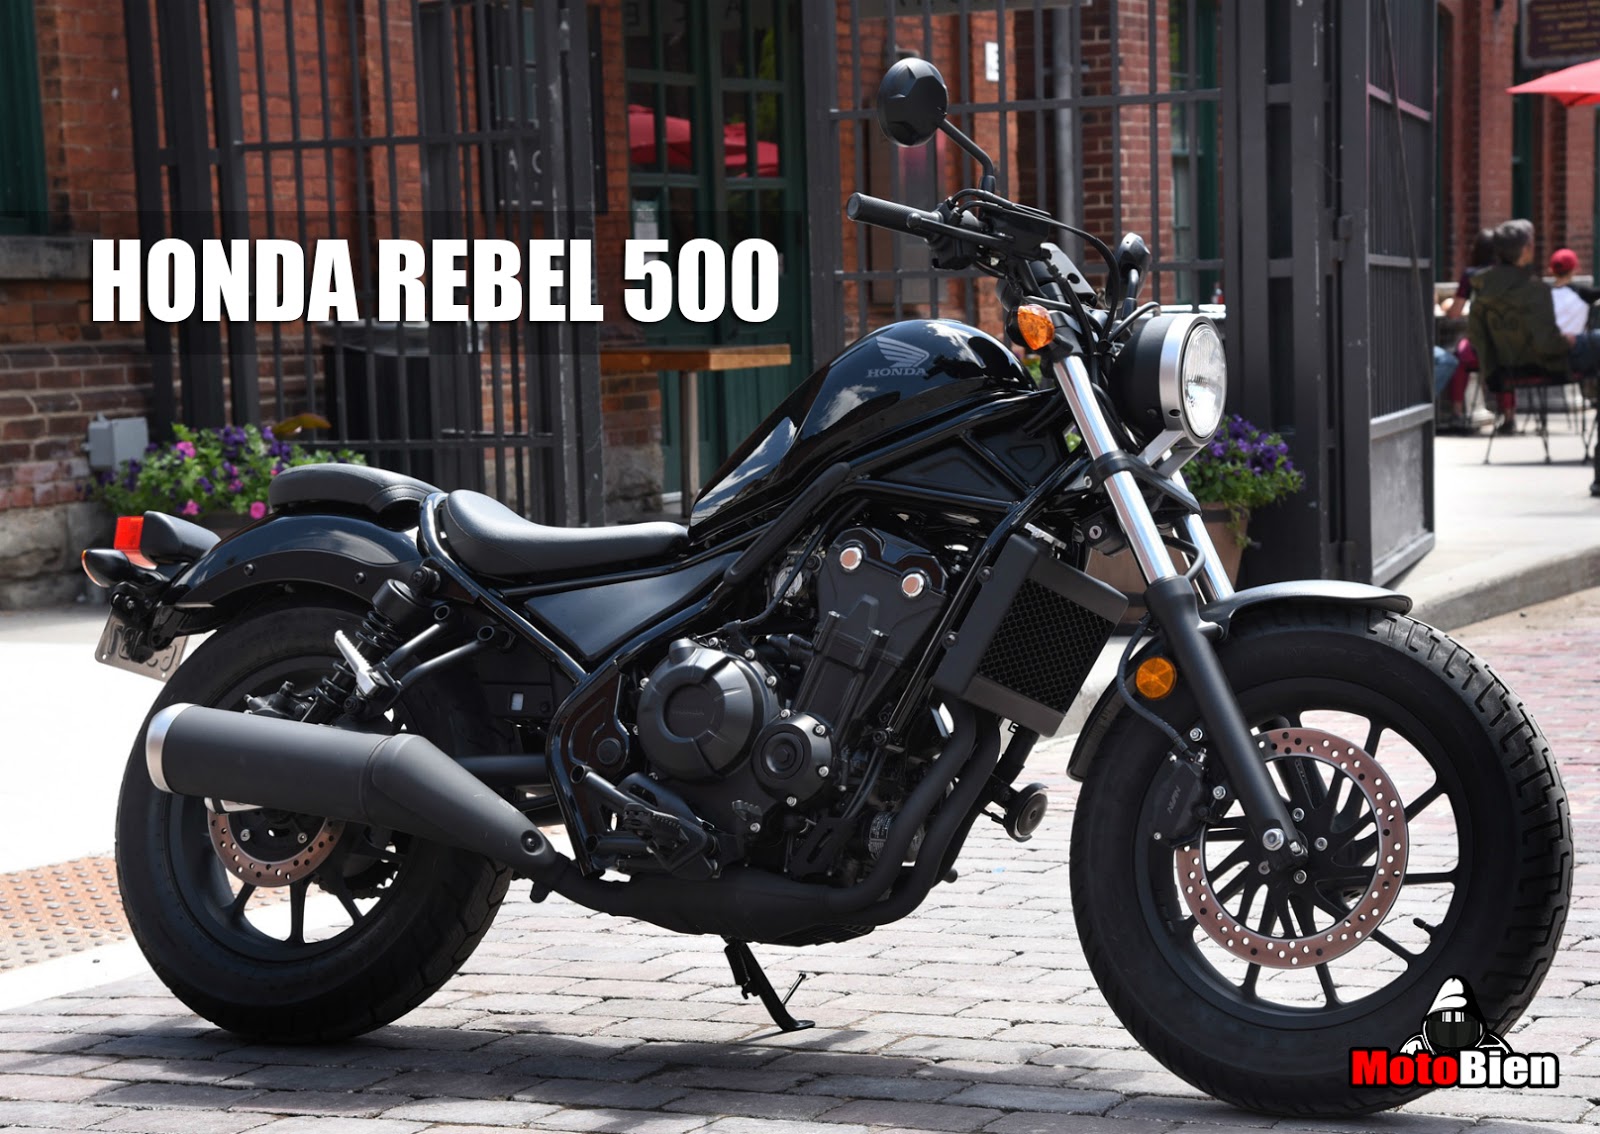 MotoBien: MotoReview: Honda Rebel 500